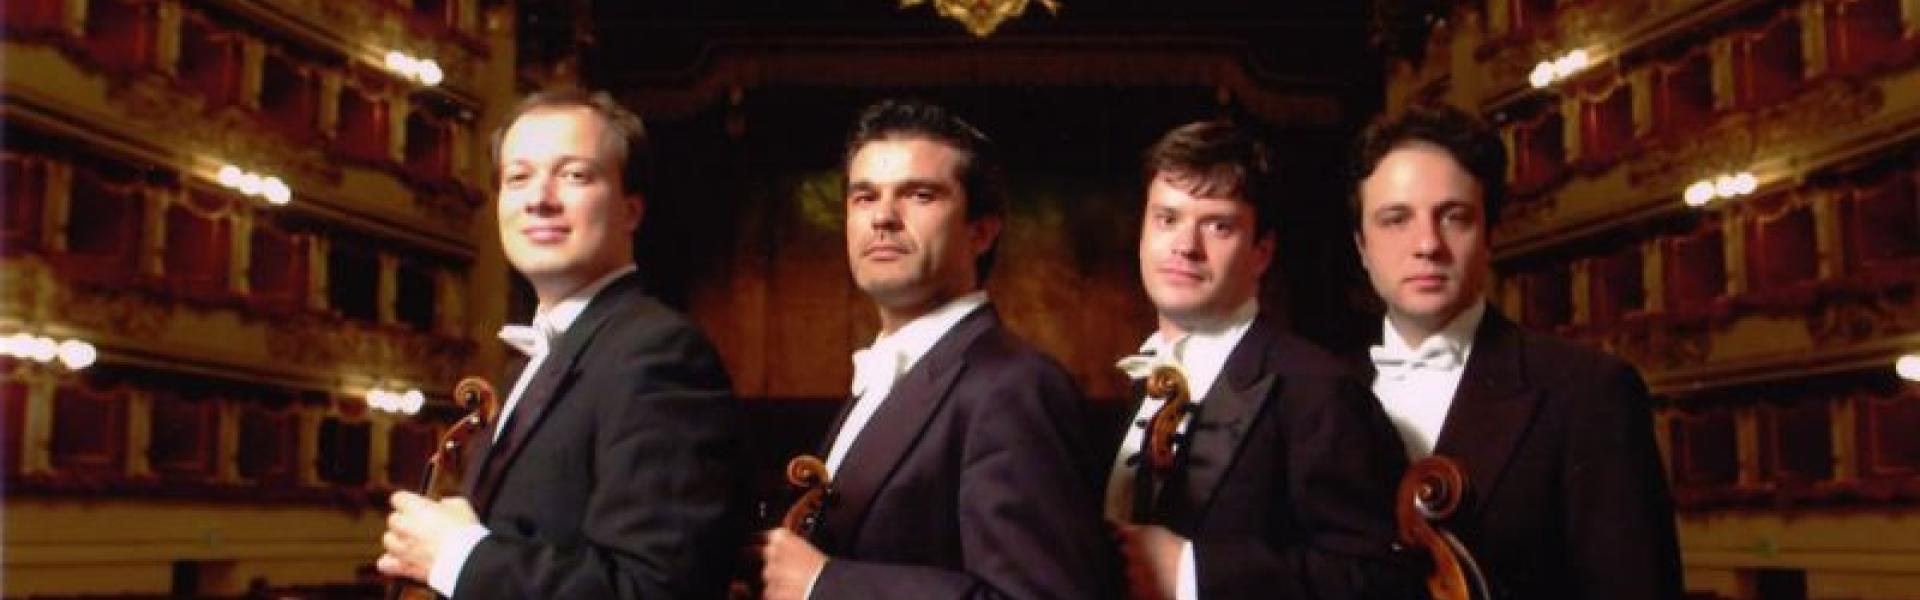 Quartetto della Scala.jpg